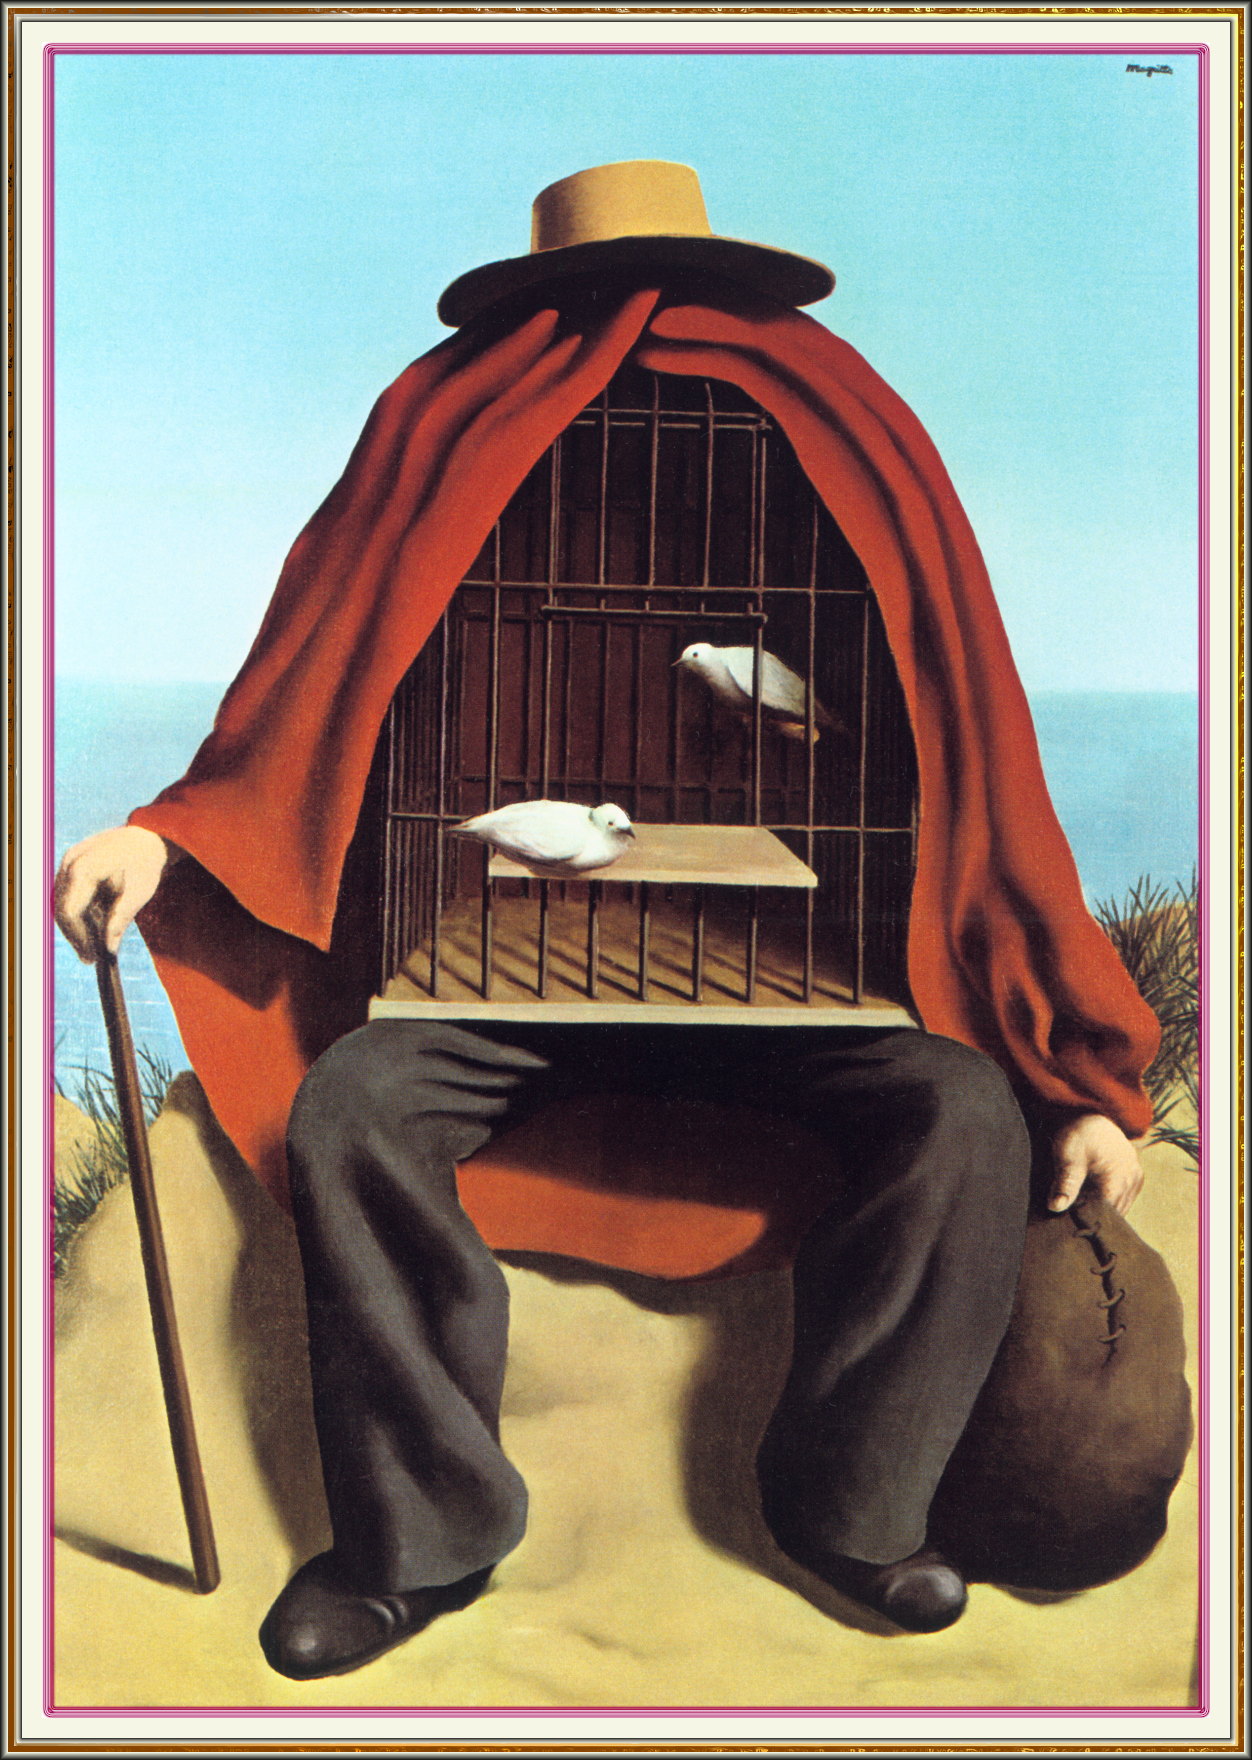 Rene Magritte Portrait Rene Magritte Magritte Conceptual Art Images